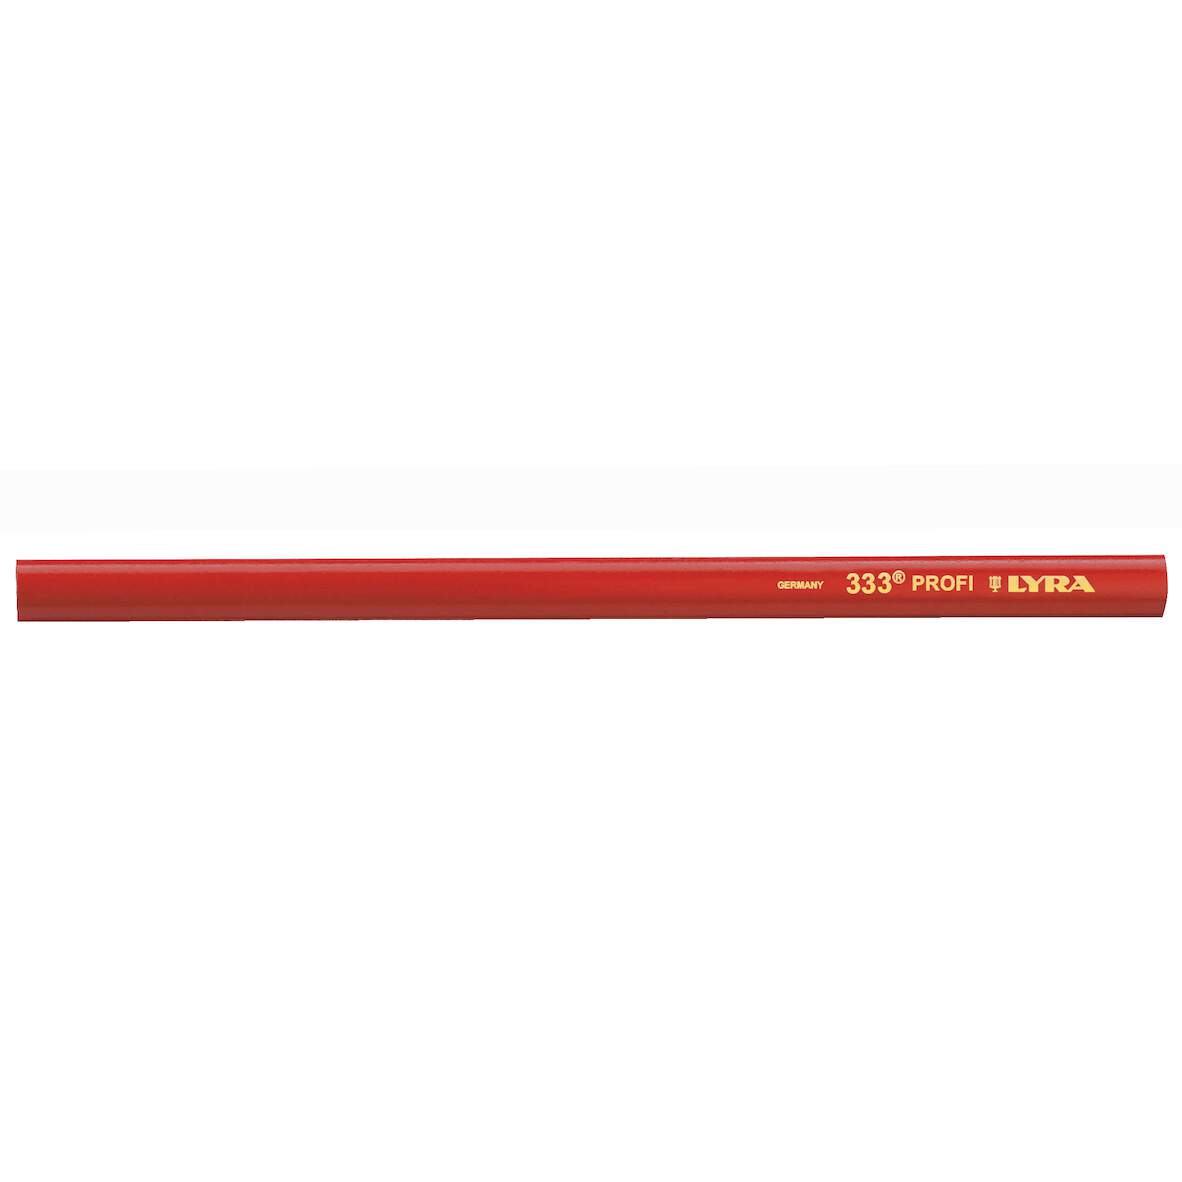 1069510 - Zimmermannsstift oval 24cm